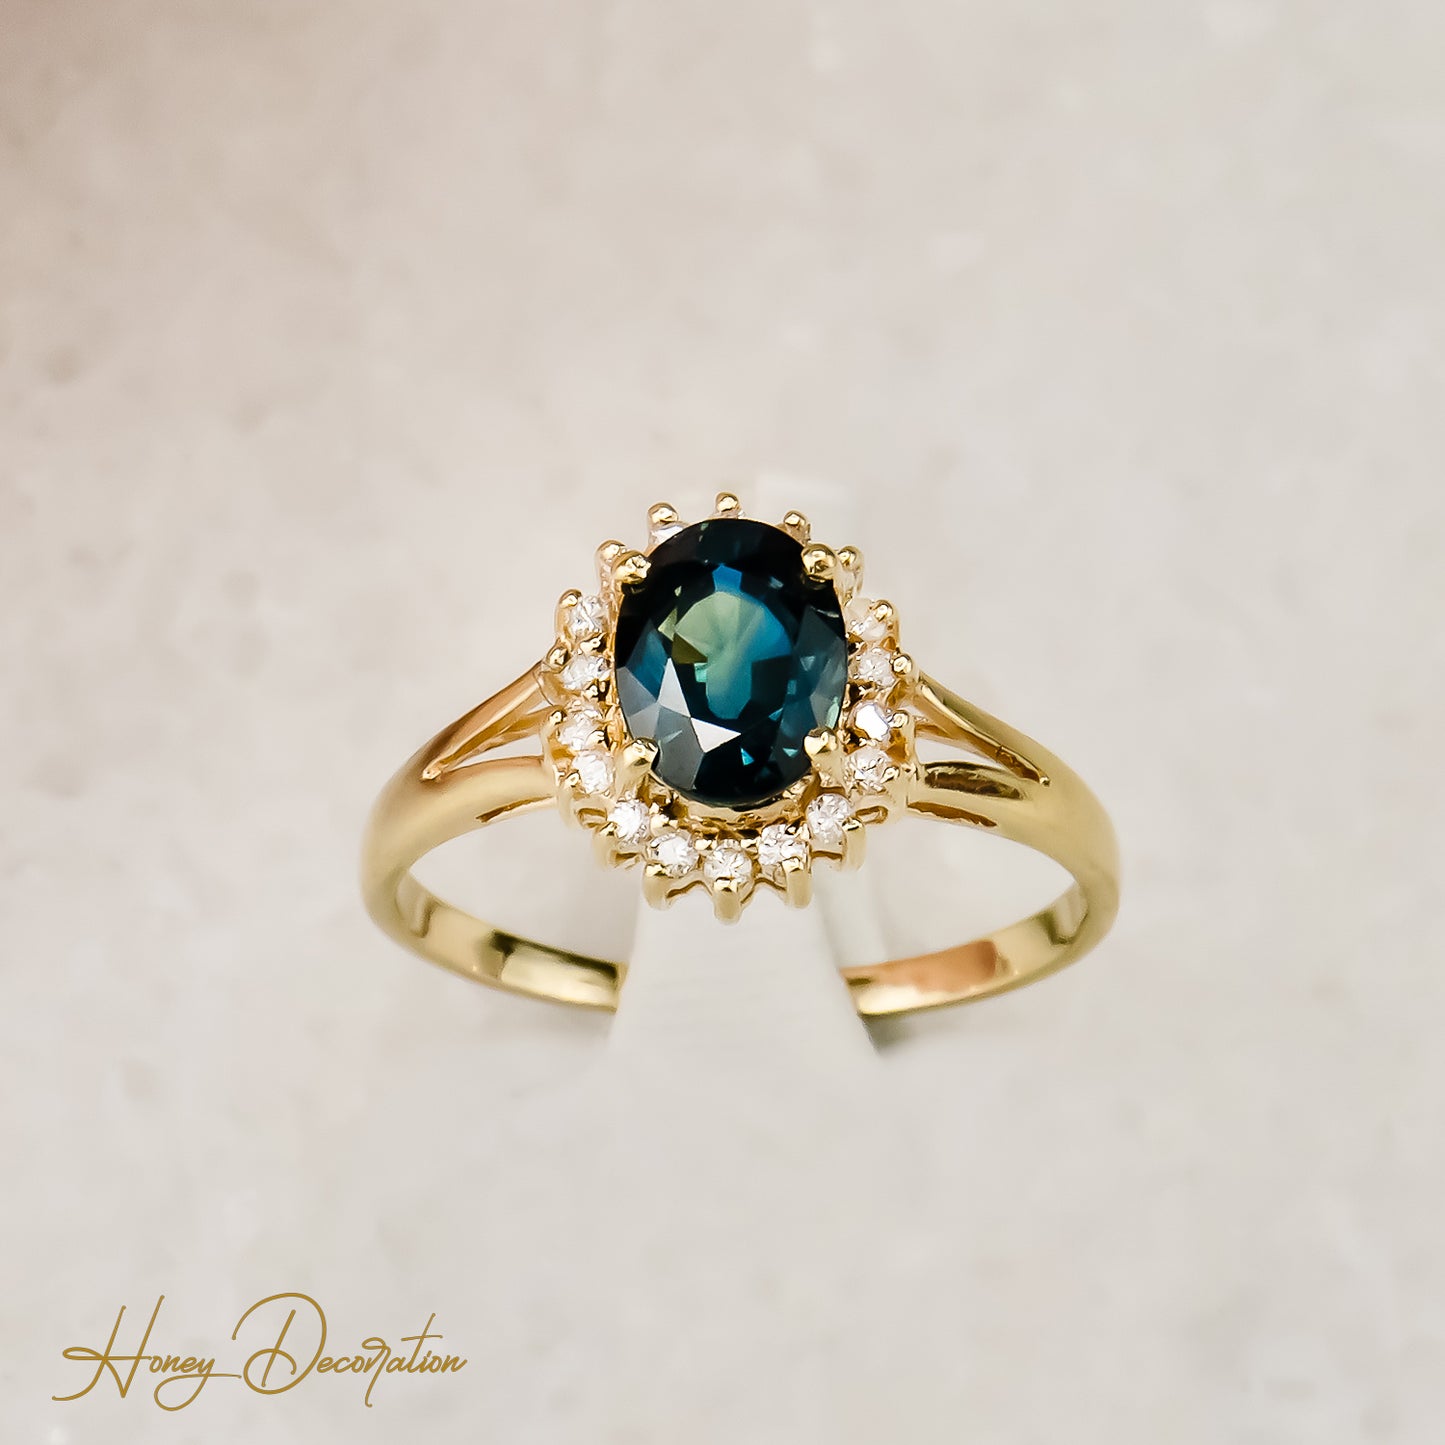 Halbedelstein -ring 14 karat gold - a splash of color